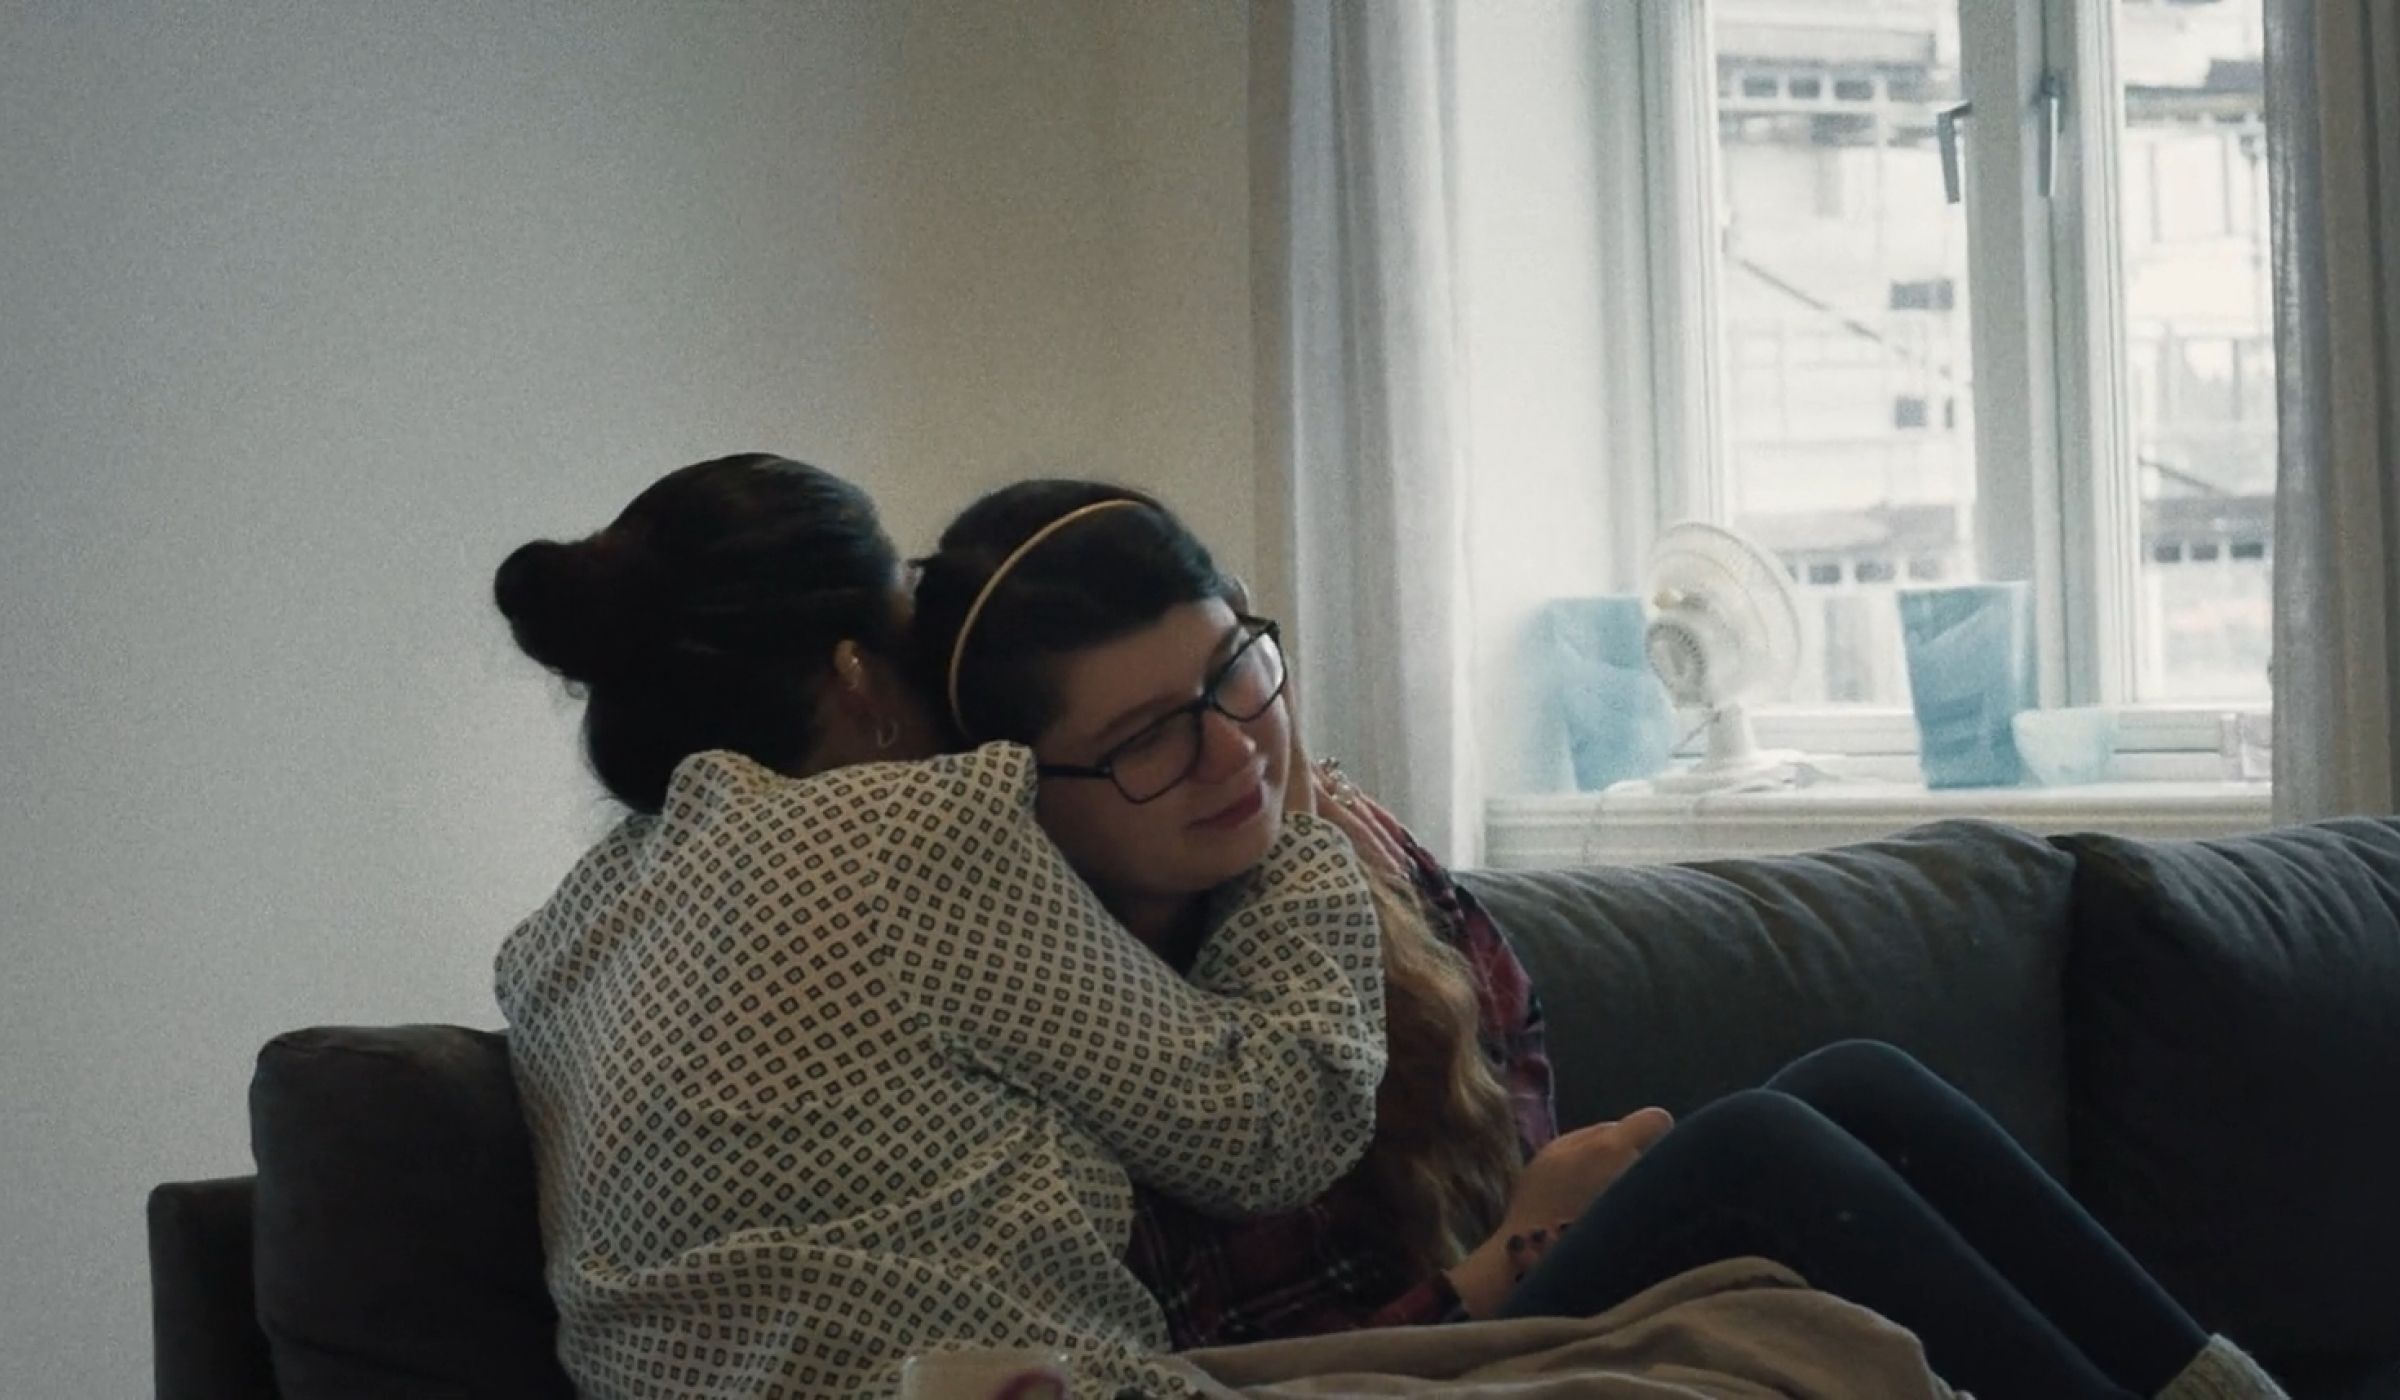 Stillsbilde fra filmen Alt det jeg er. Emilie og moren klemmer.